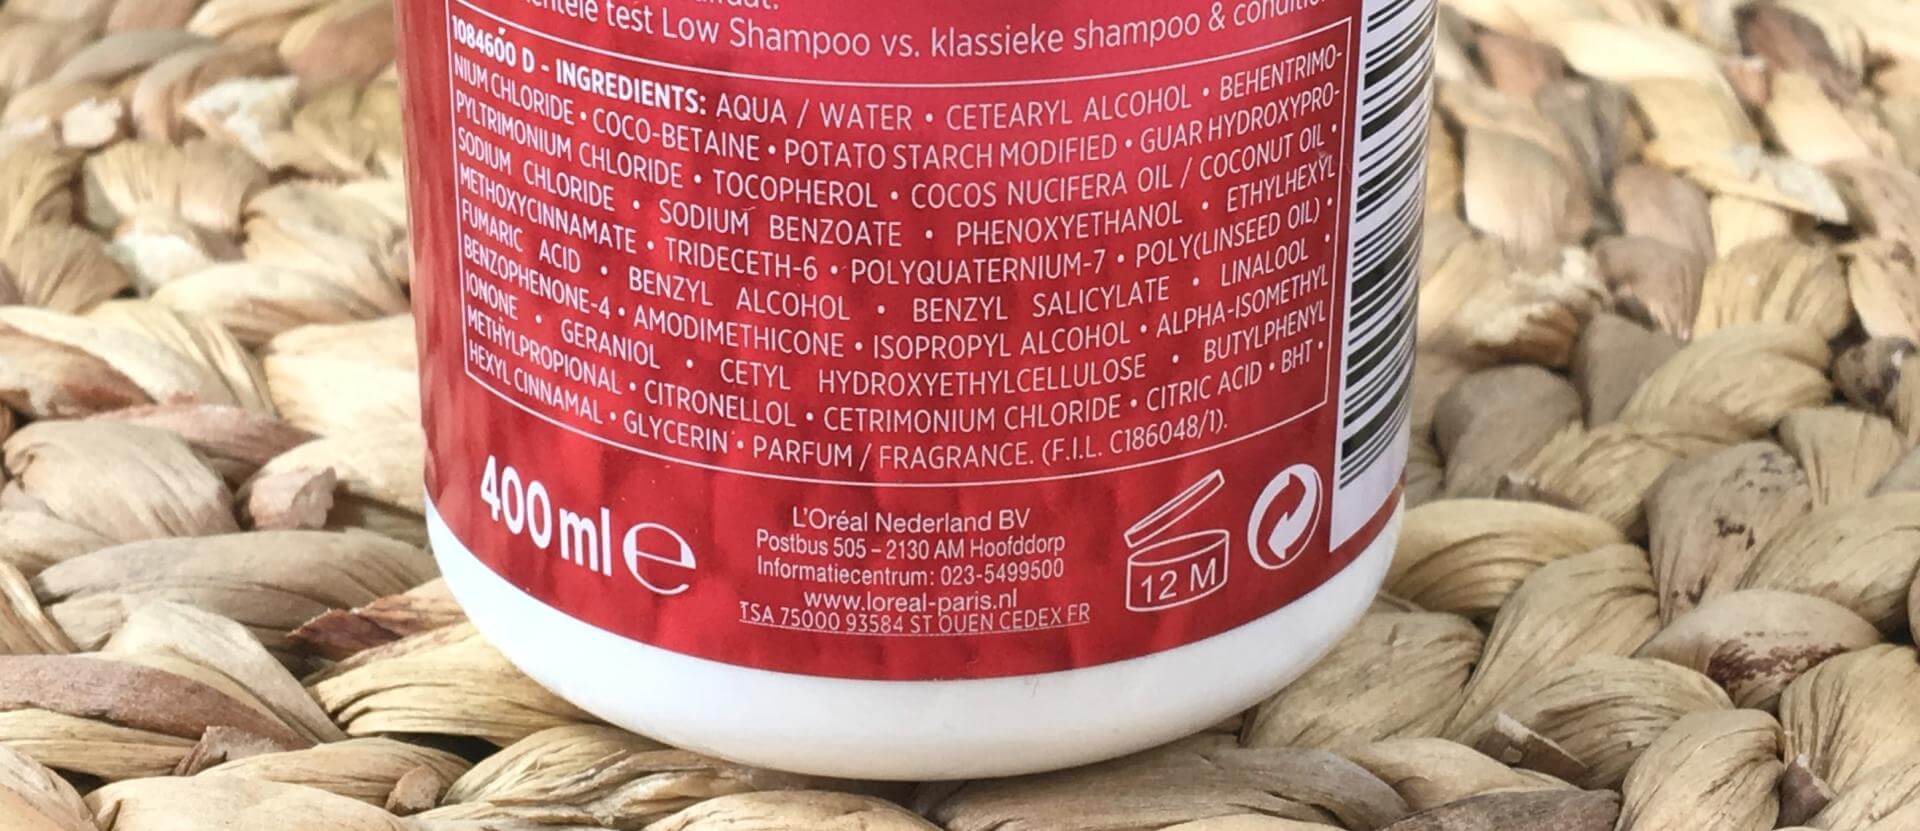 Elvive color vive low shampoo 